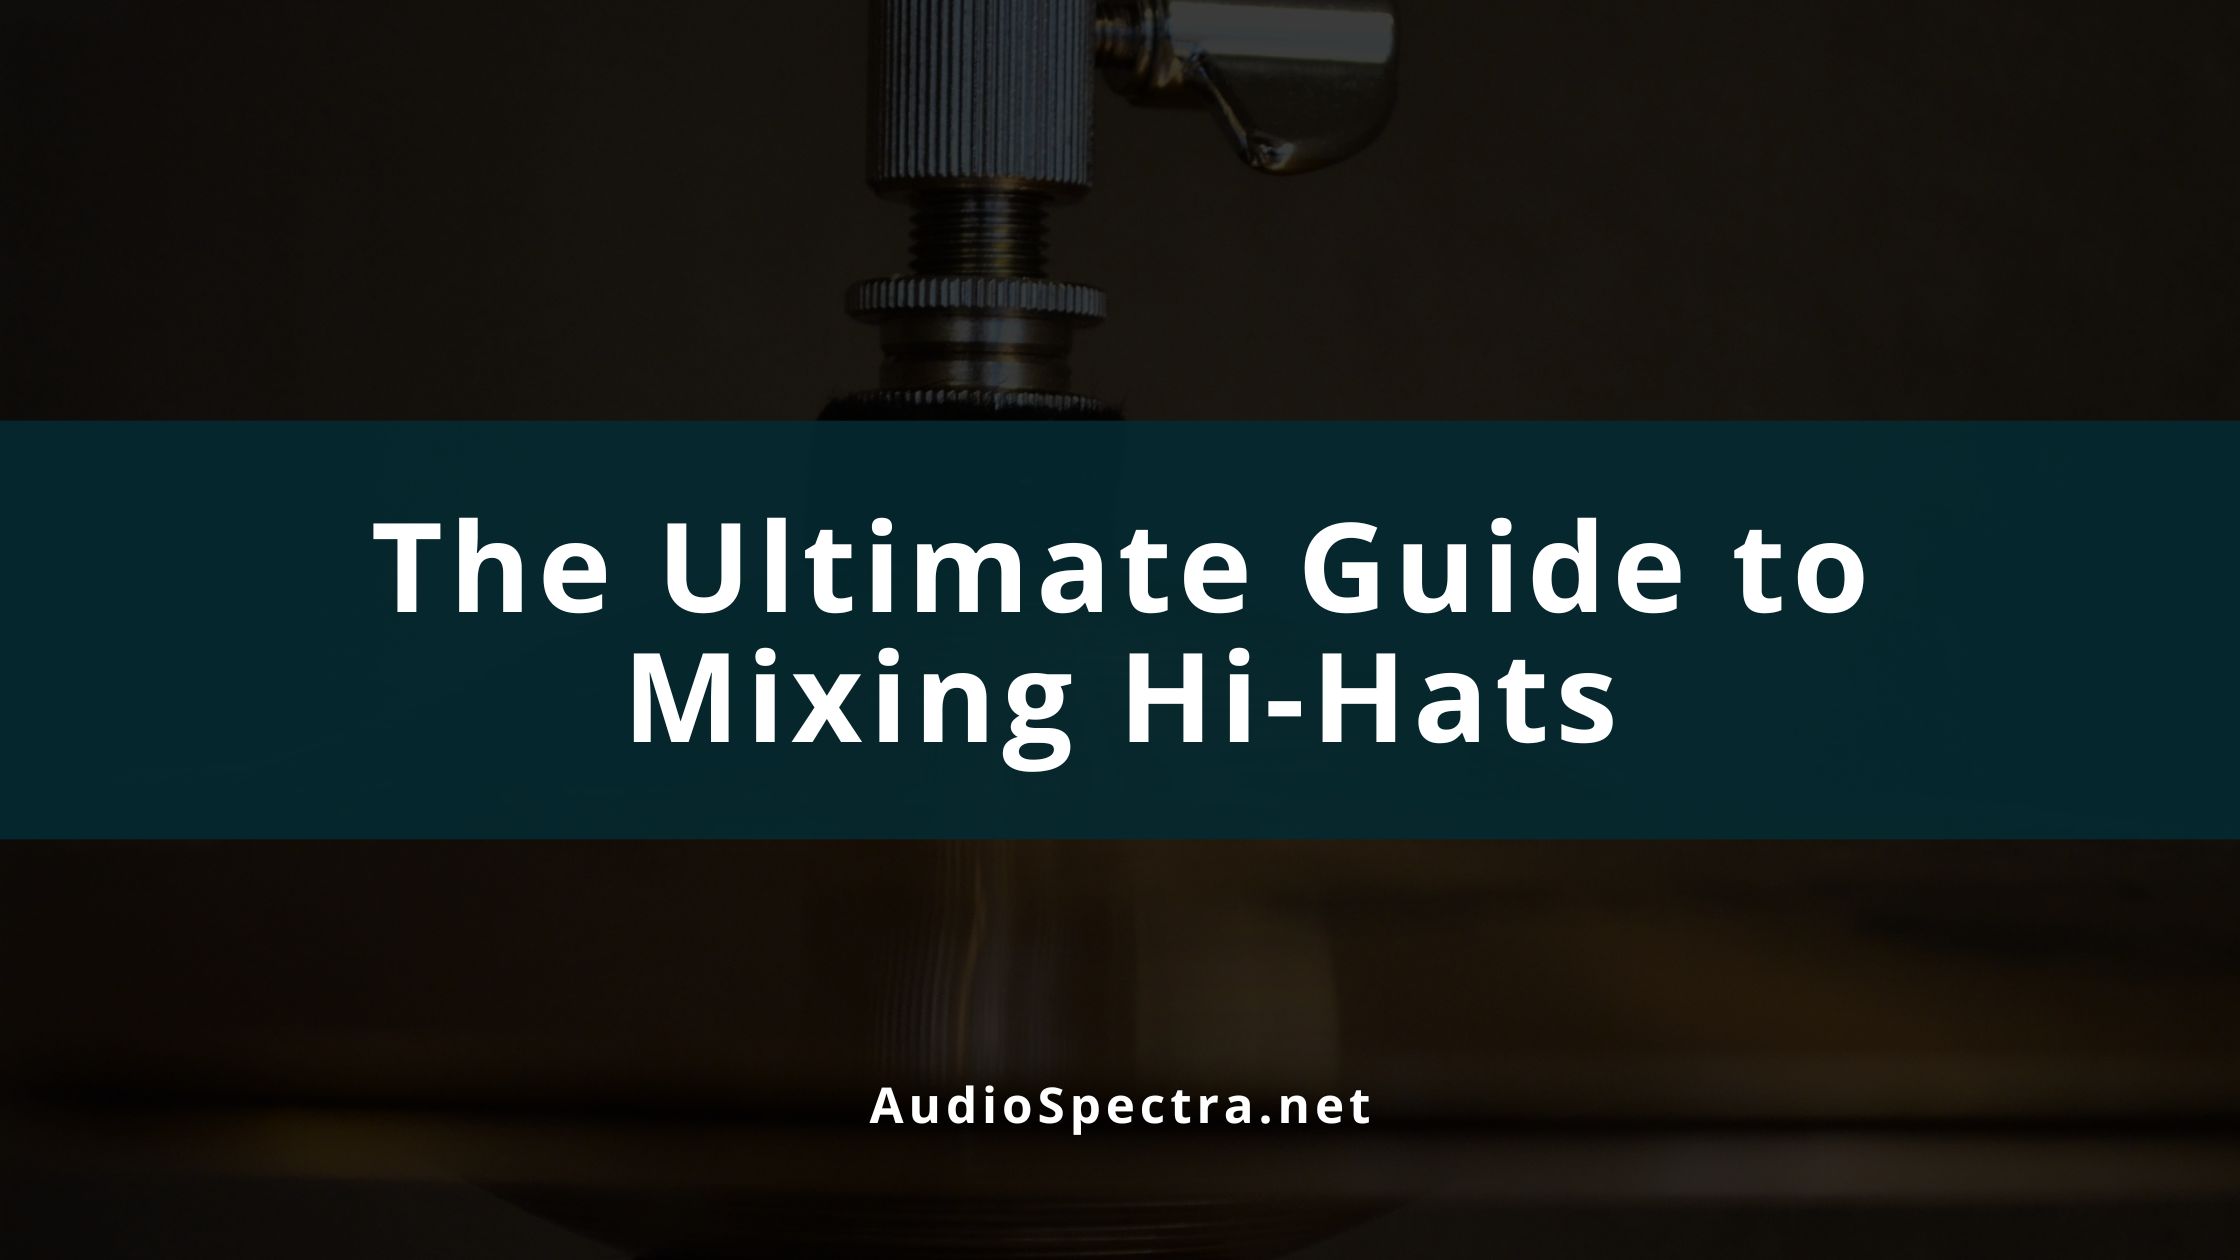 How to Mix Hi-hats